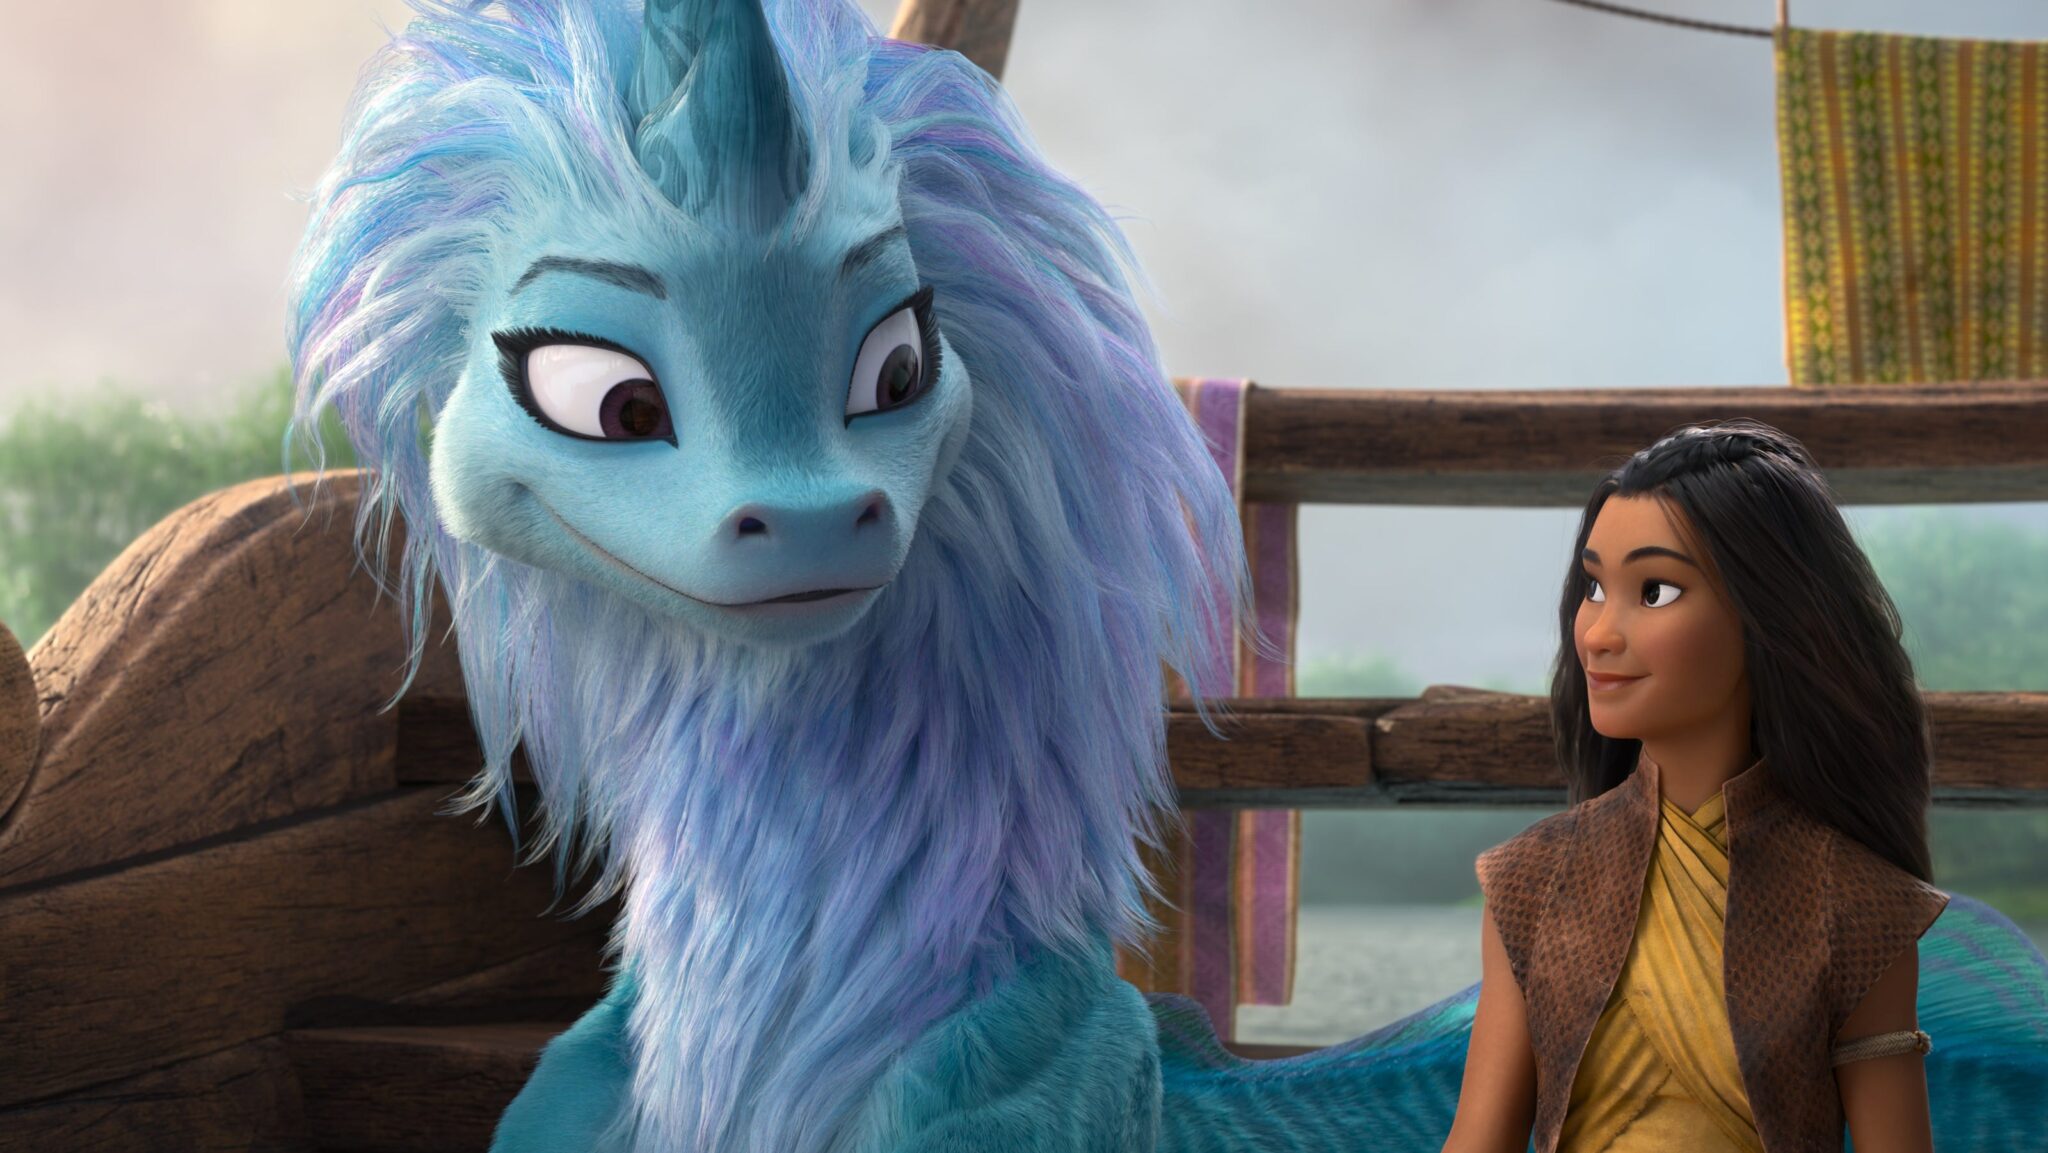 Algunos datos curiosos detrás de 'Raya y el último dragón' de Disney